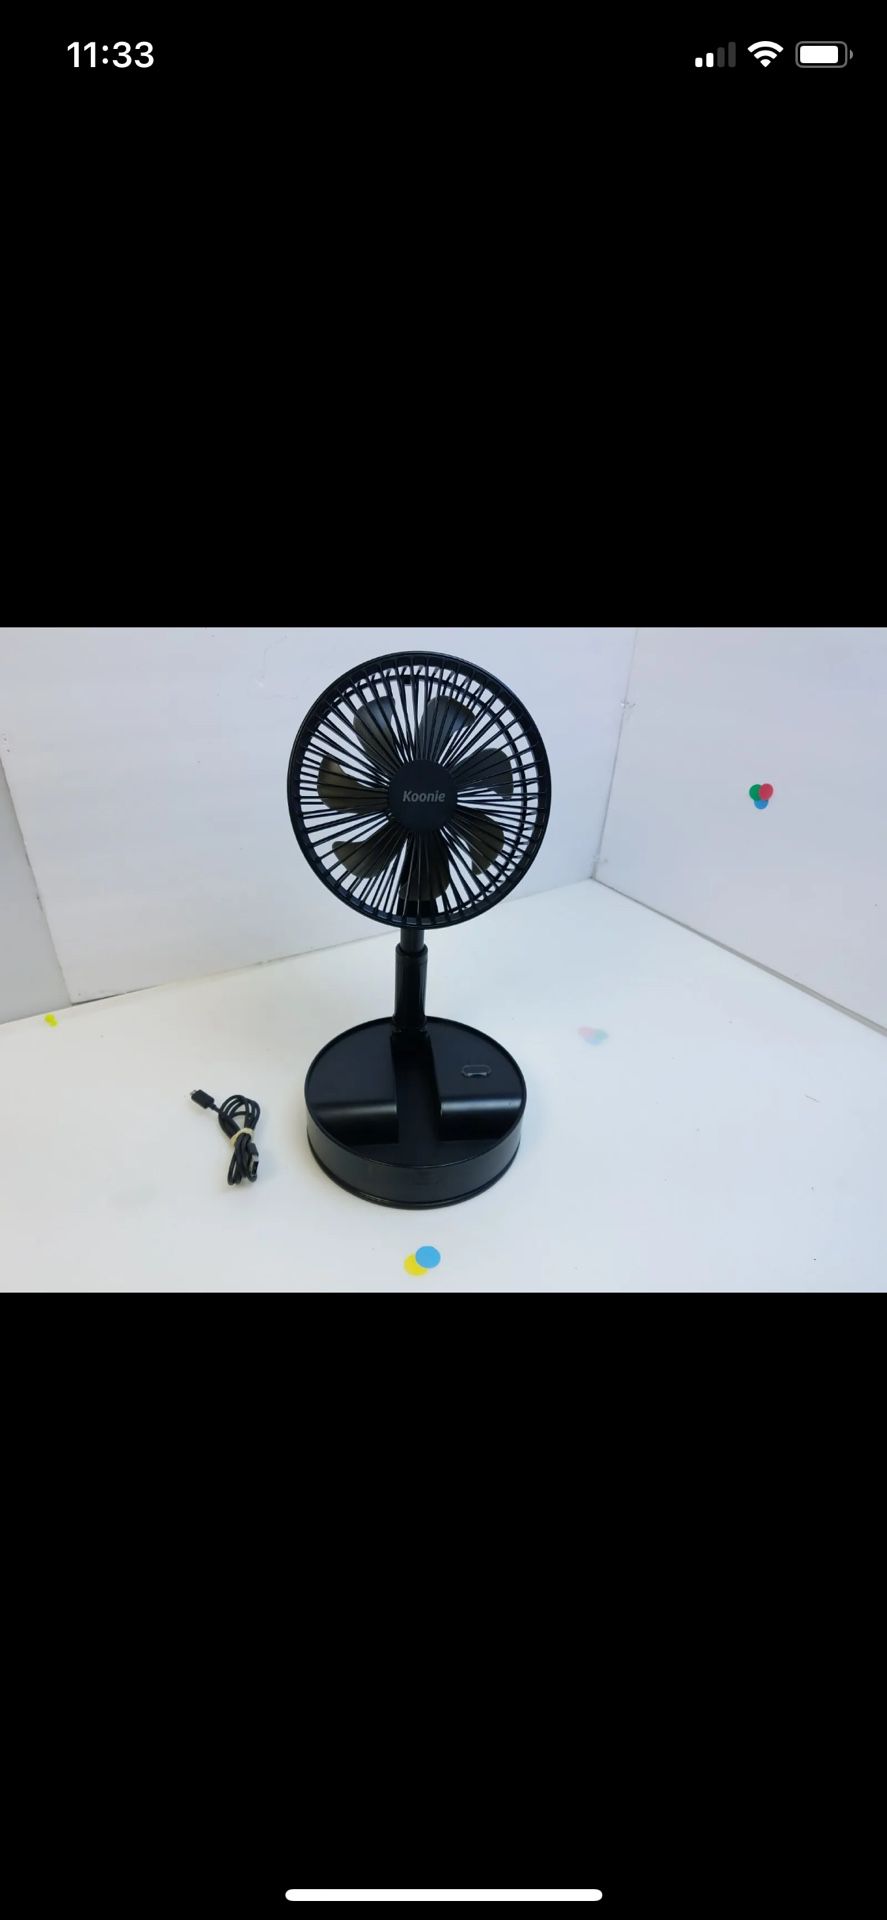 Koonie 8-Inch Foldaway Oscillating Fan no Remote Control zd201